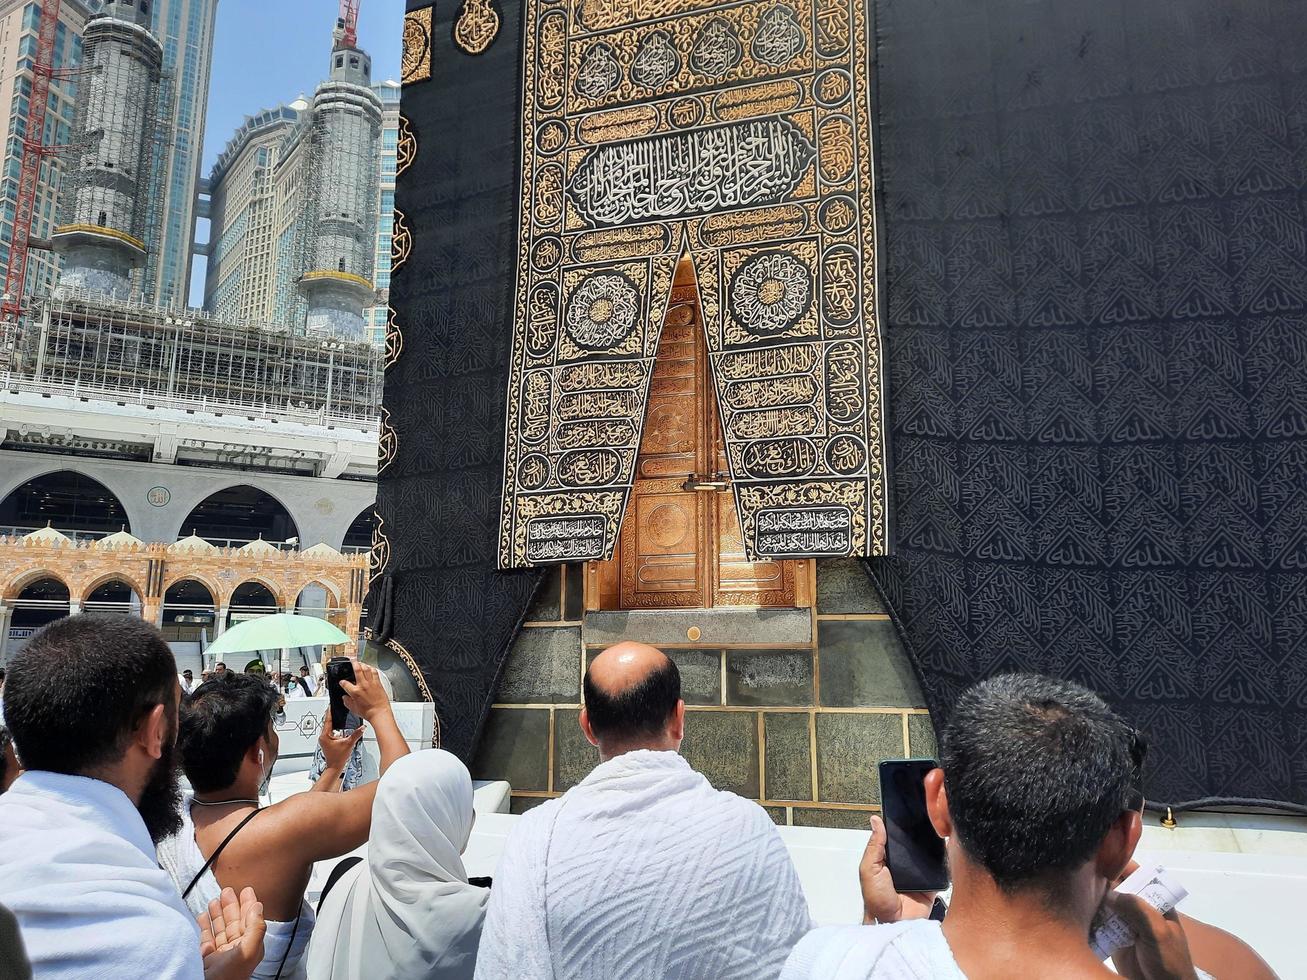 mekka, saudi-arabien, juni 2022 - schöne aussicht auf die kaaba und den eingang zur kaaba in der masjid al haram in mekka. foto